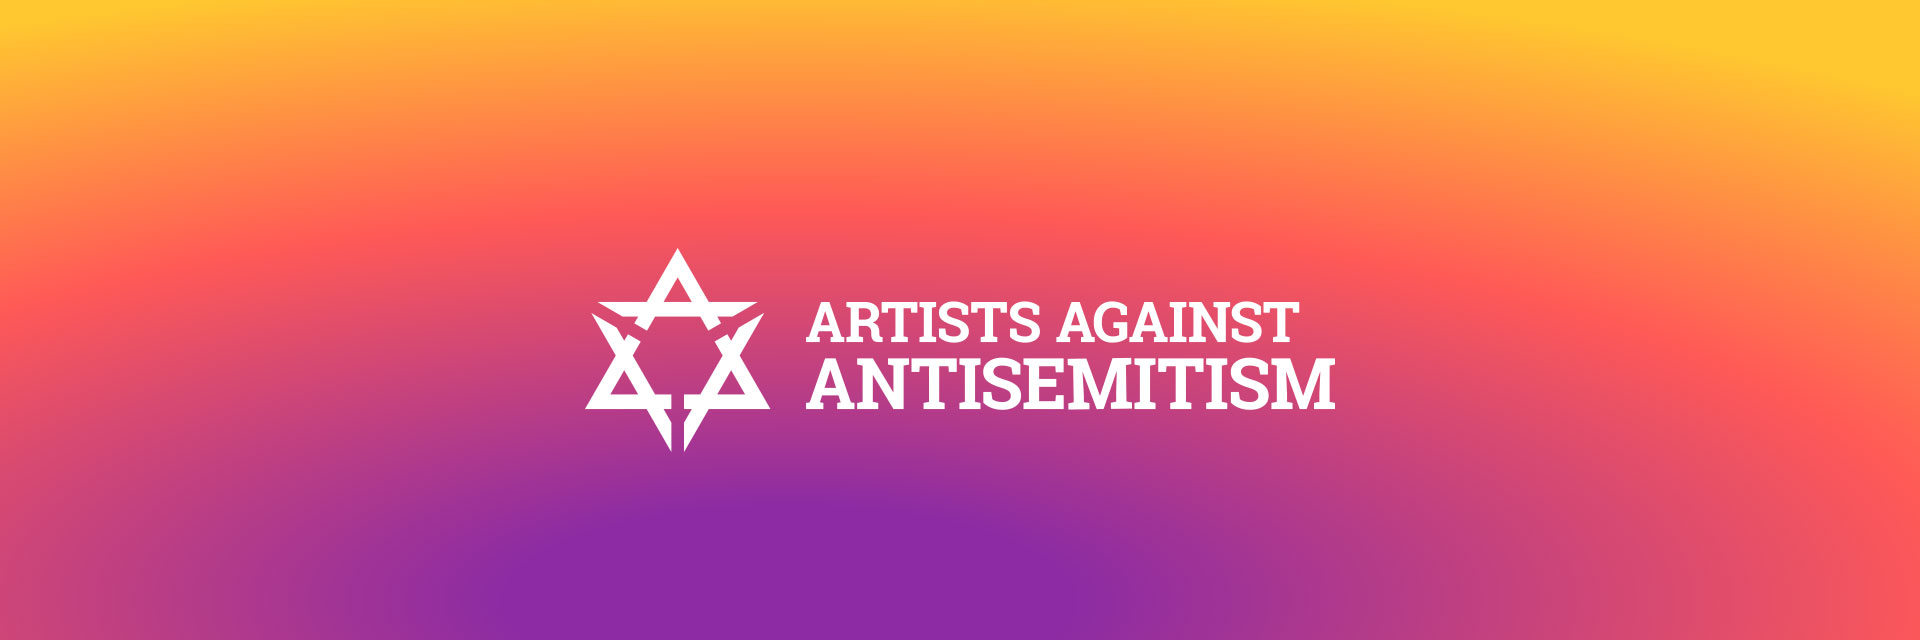 Willkommensbanner von Artists Against Antisemitism. das Logo Logo ist weiß, im Hintergrund ein Verlauf von lila zu rot, zu gelb. Gegen jeden Antisemitismus